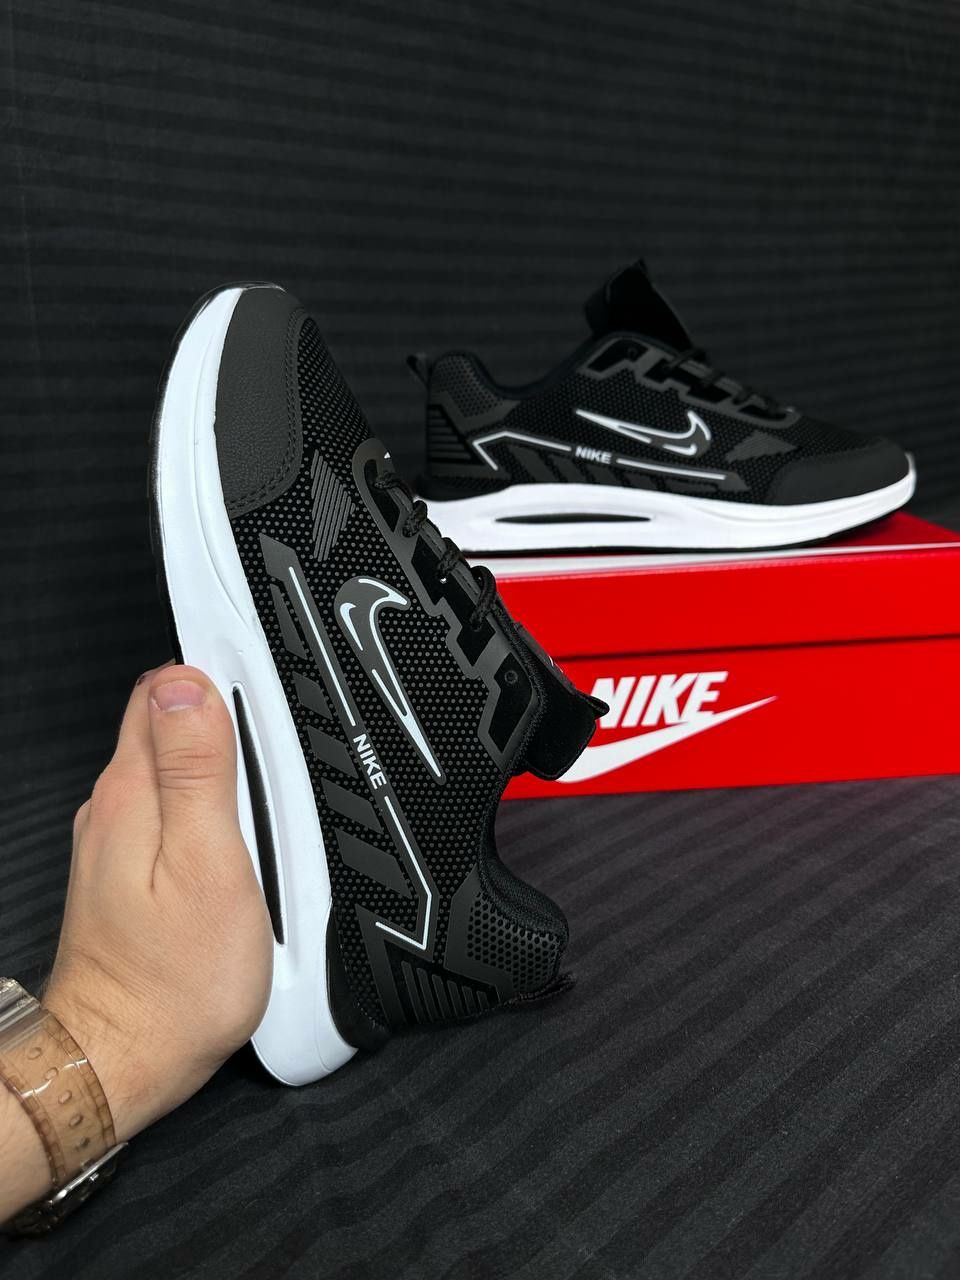 Nike New Black/Мужские кросовки/Чоловічі кросівки/nike/найк/40-44